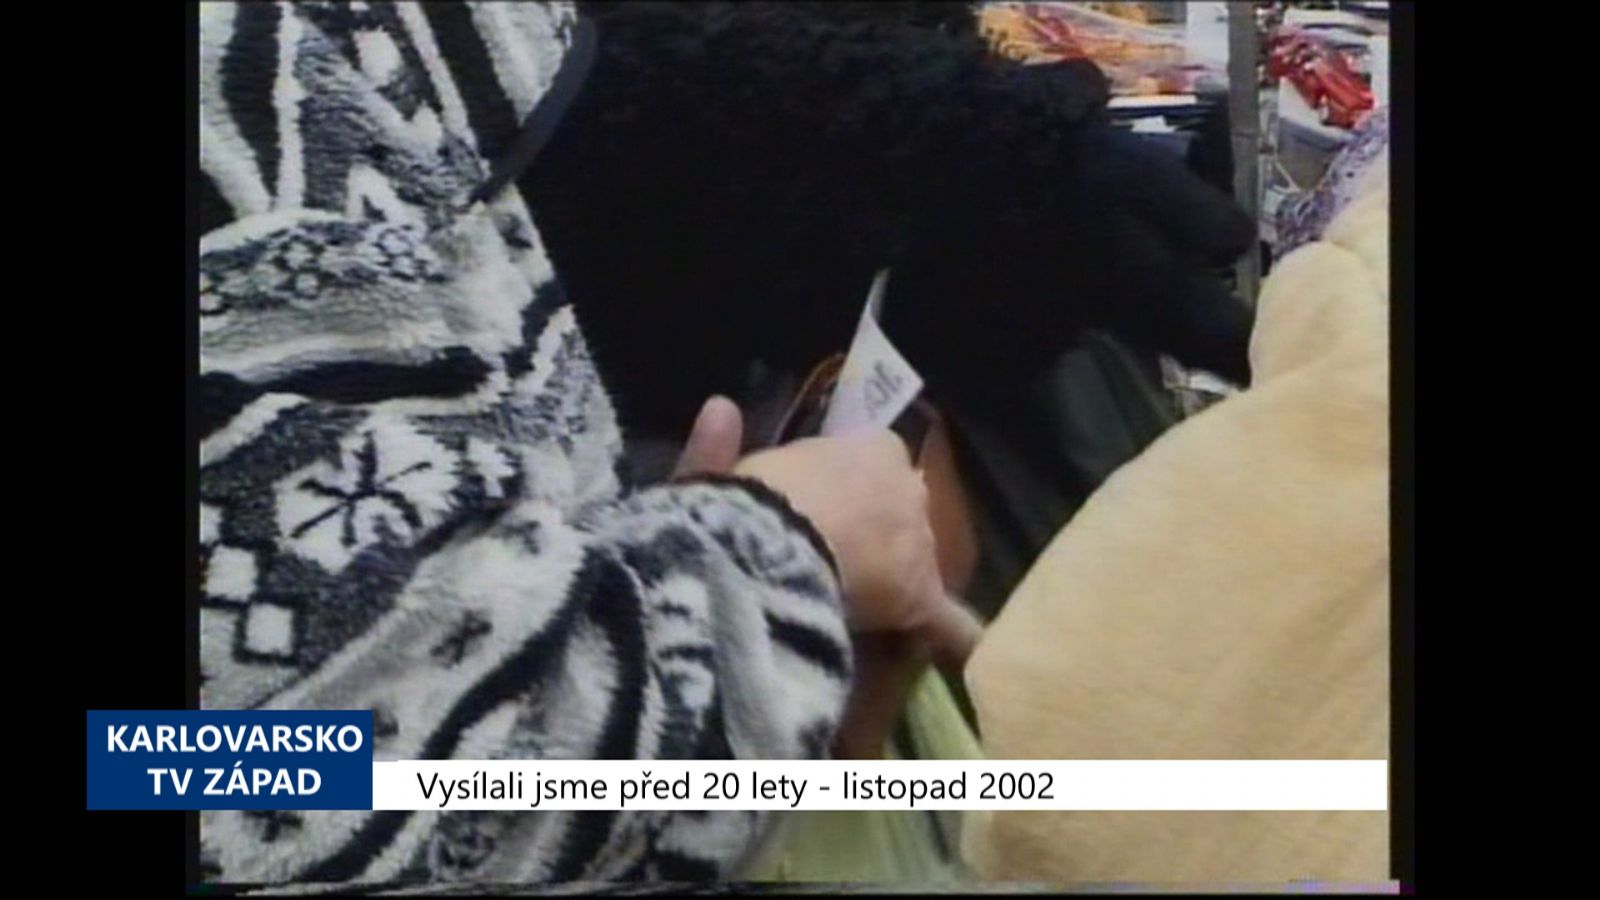 2002 – Sokolovsko: Pozor na kapsáře, zvláště v předvánoční době (TV Západ)